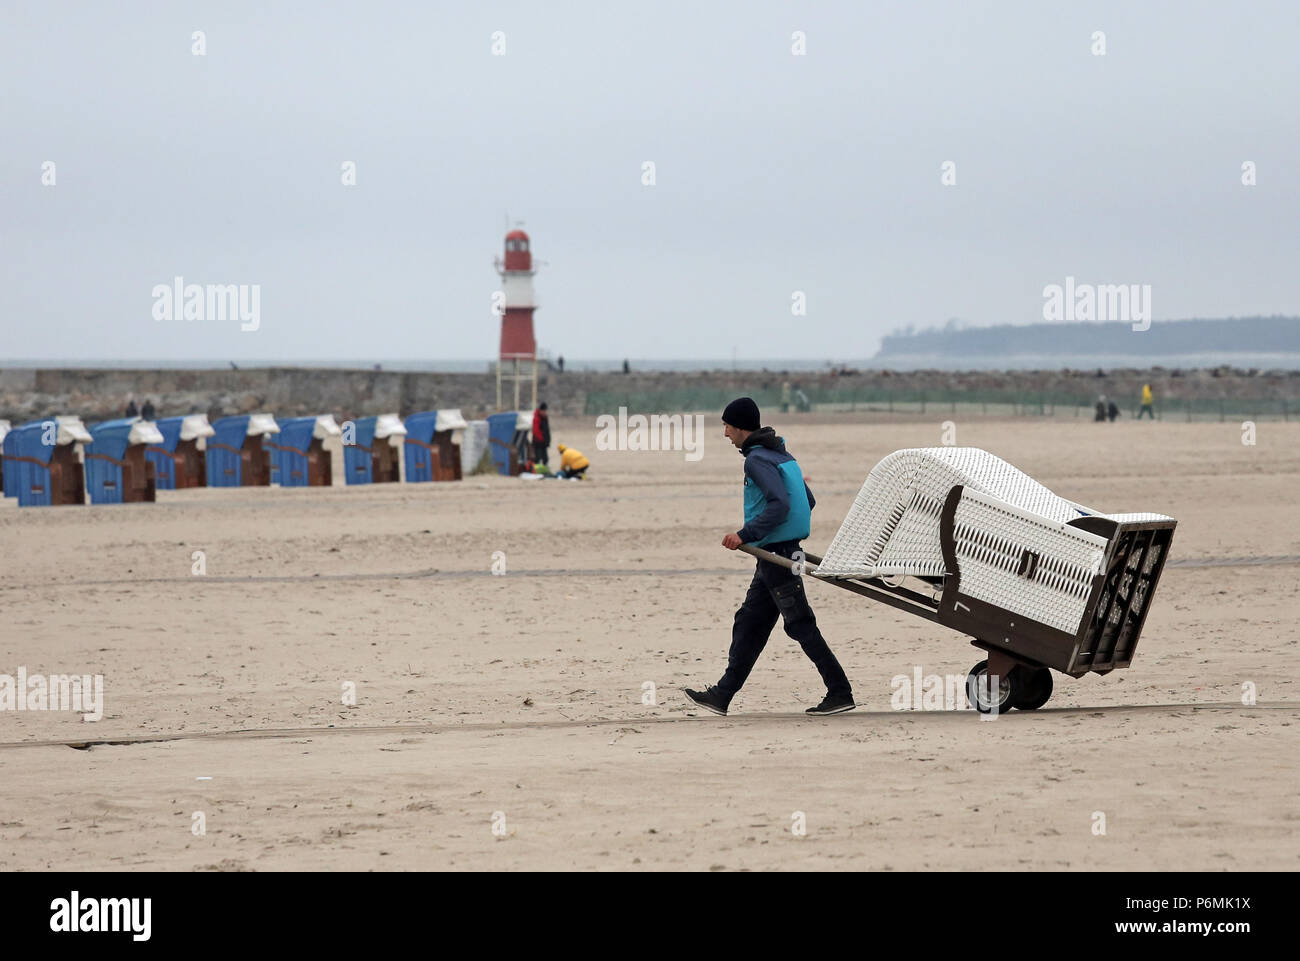 Warnemuende, man brings a beach chair to the beach Stock Photo